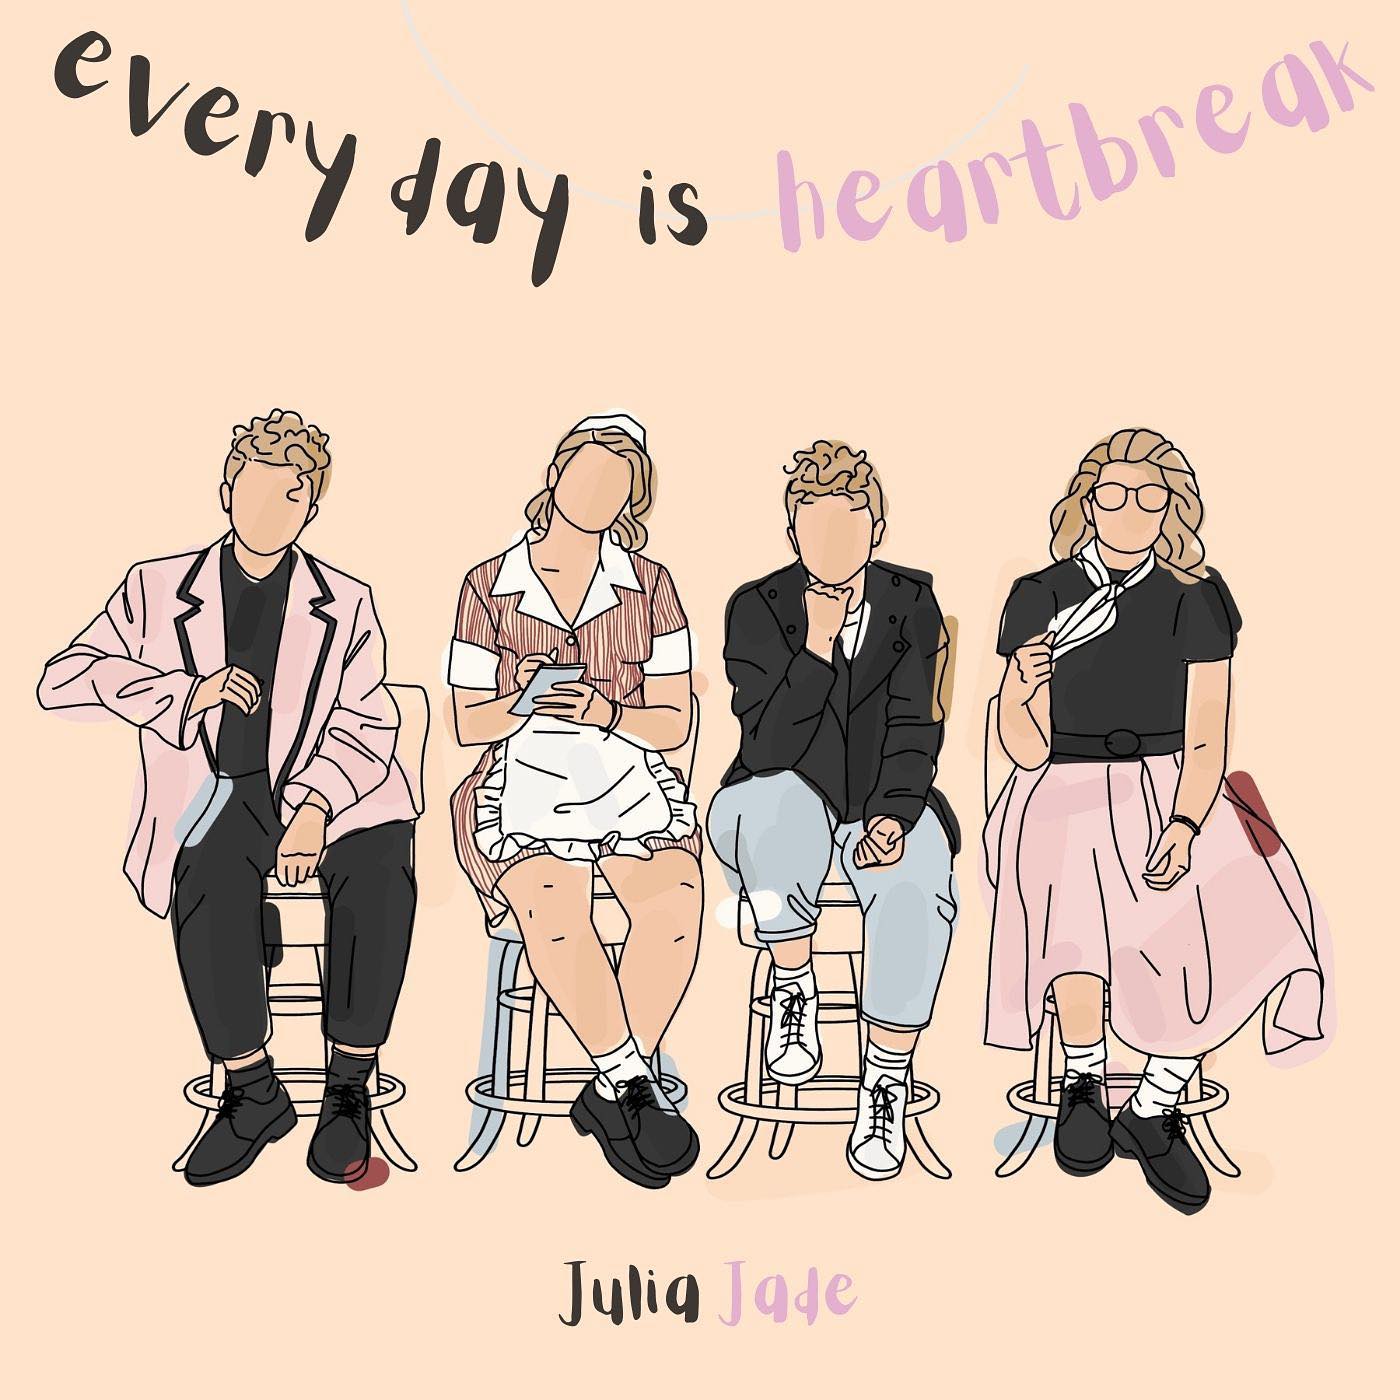 Julia Jade - 'every day is heartbreak'